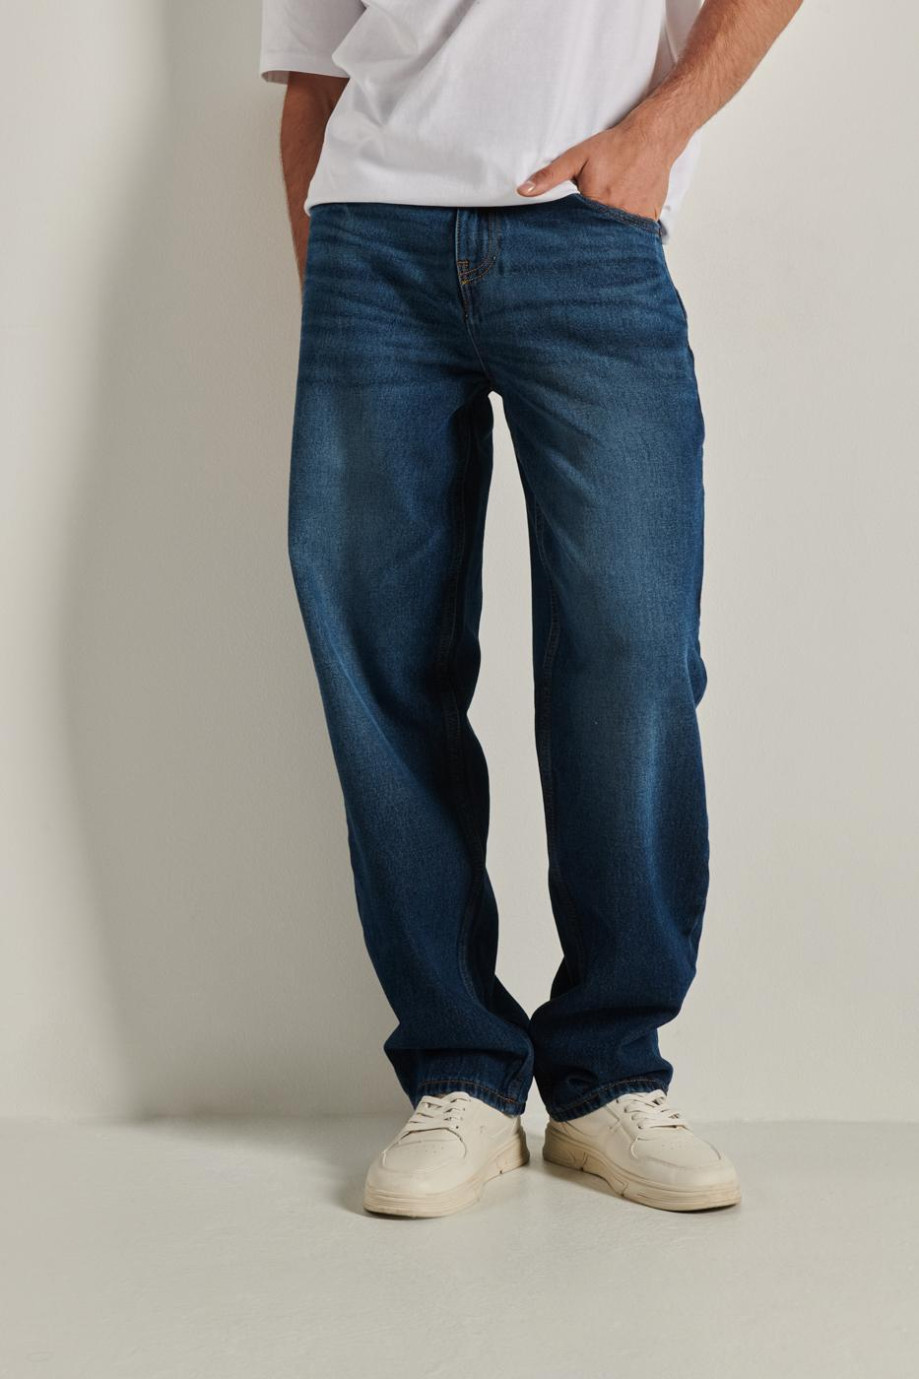 Jean carpintero azul oscuro con tiro medio, bota ancha y 5 bolsillos